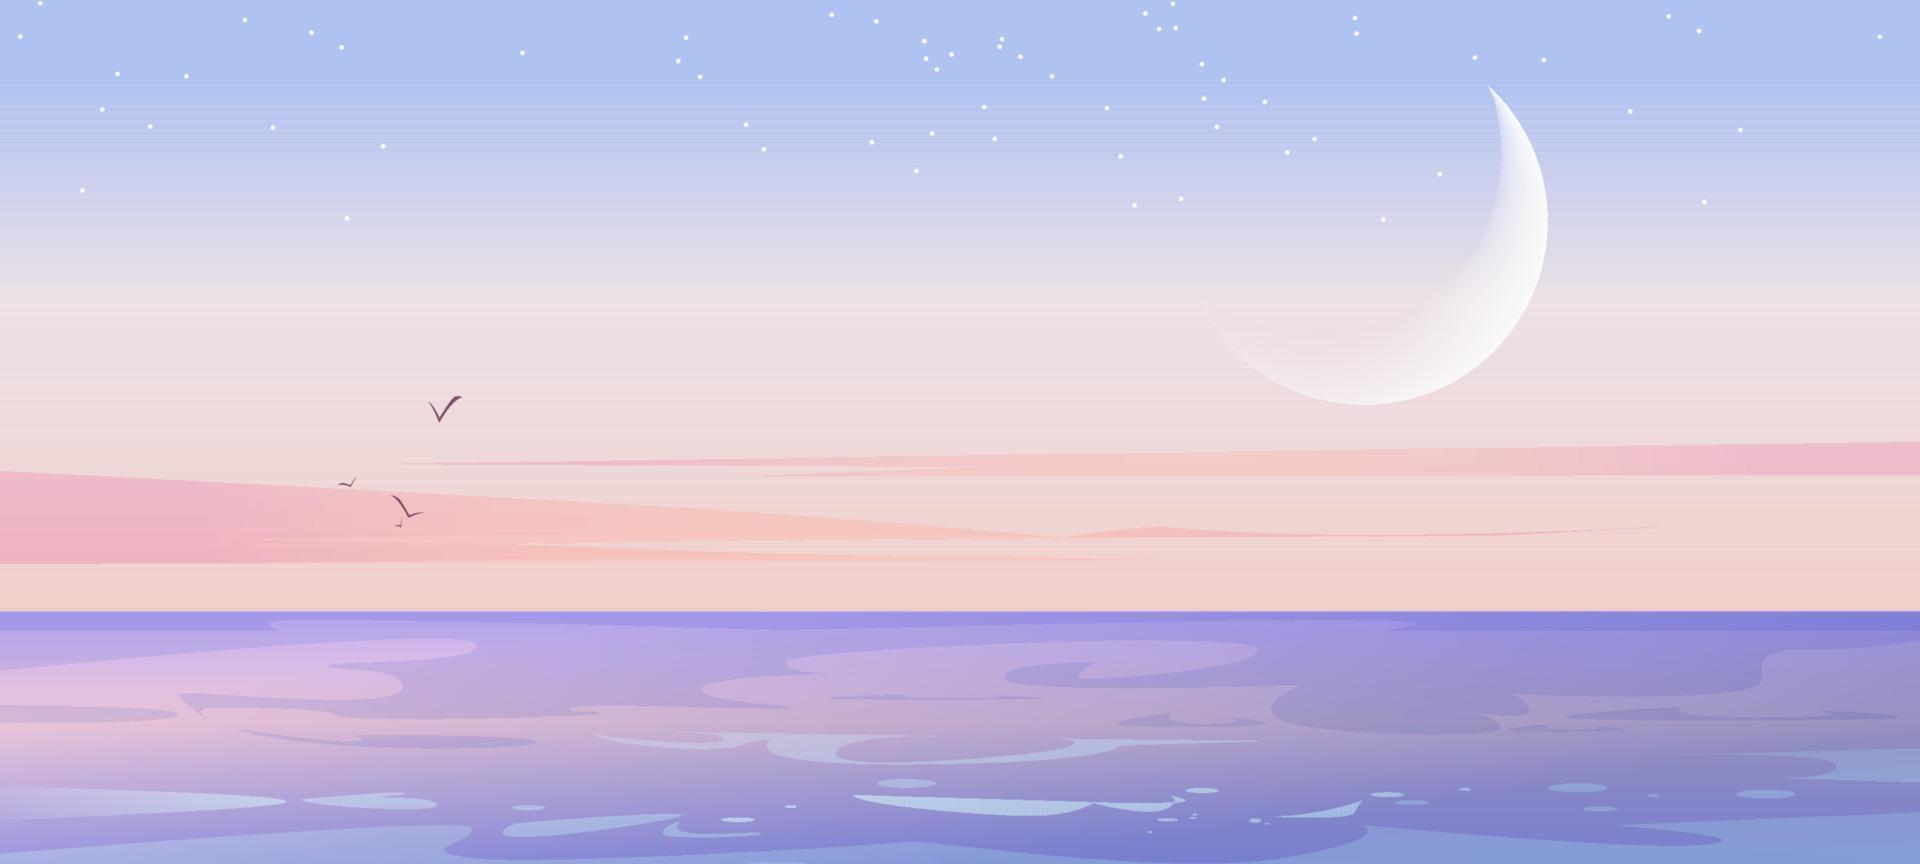 paisagem do mar com lua e estrelas no céu vetor